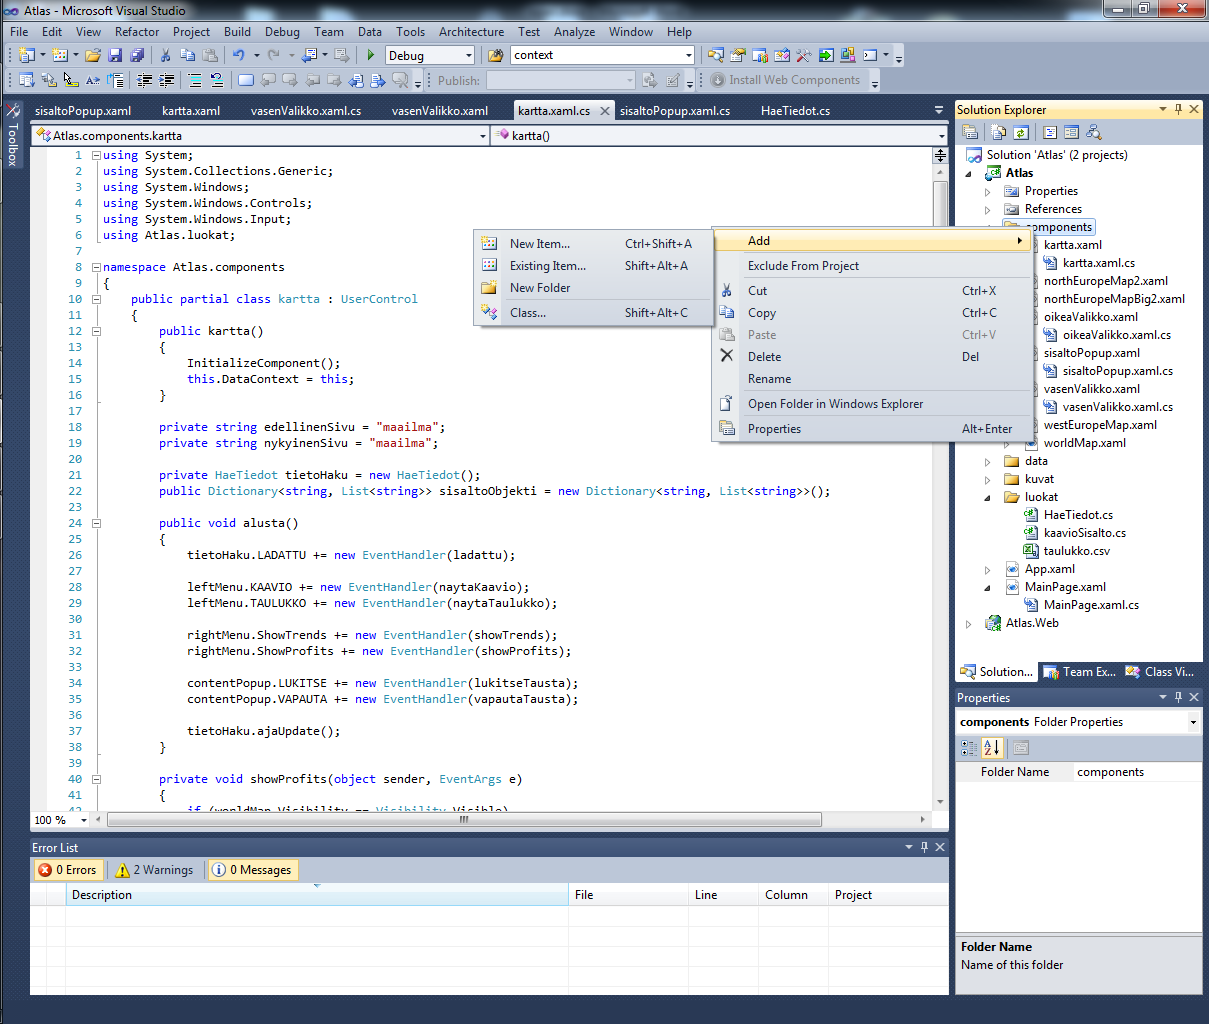 Kuva 10 Visual Studio - uuden tiedoston lisääminen Uusien tiedostojen tai kansioiden lisääminen onnistuu helposti painamalla hiiren oikeaa nappia Solution Explorerissa haluamassaan kohdassa.